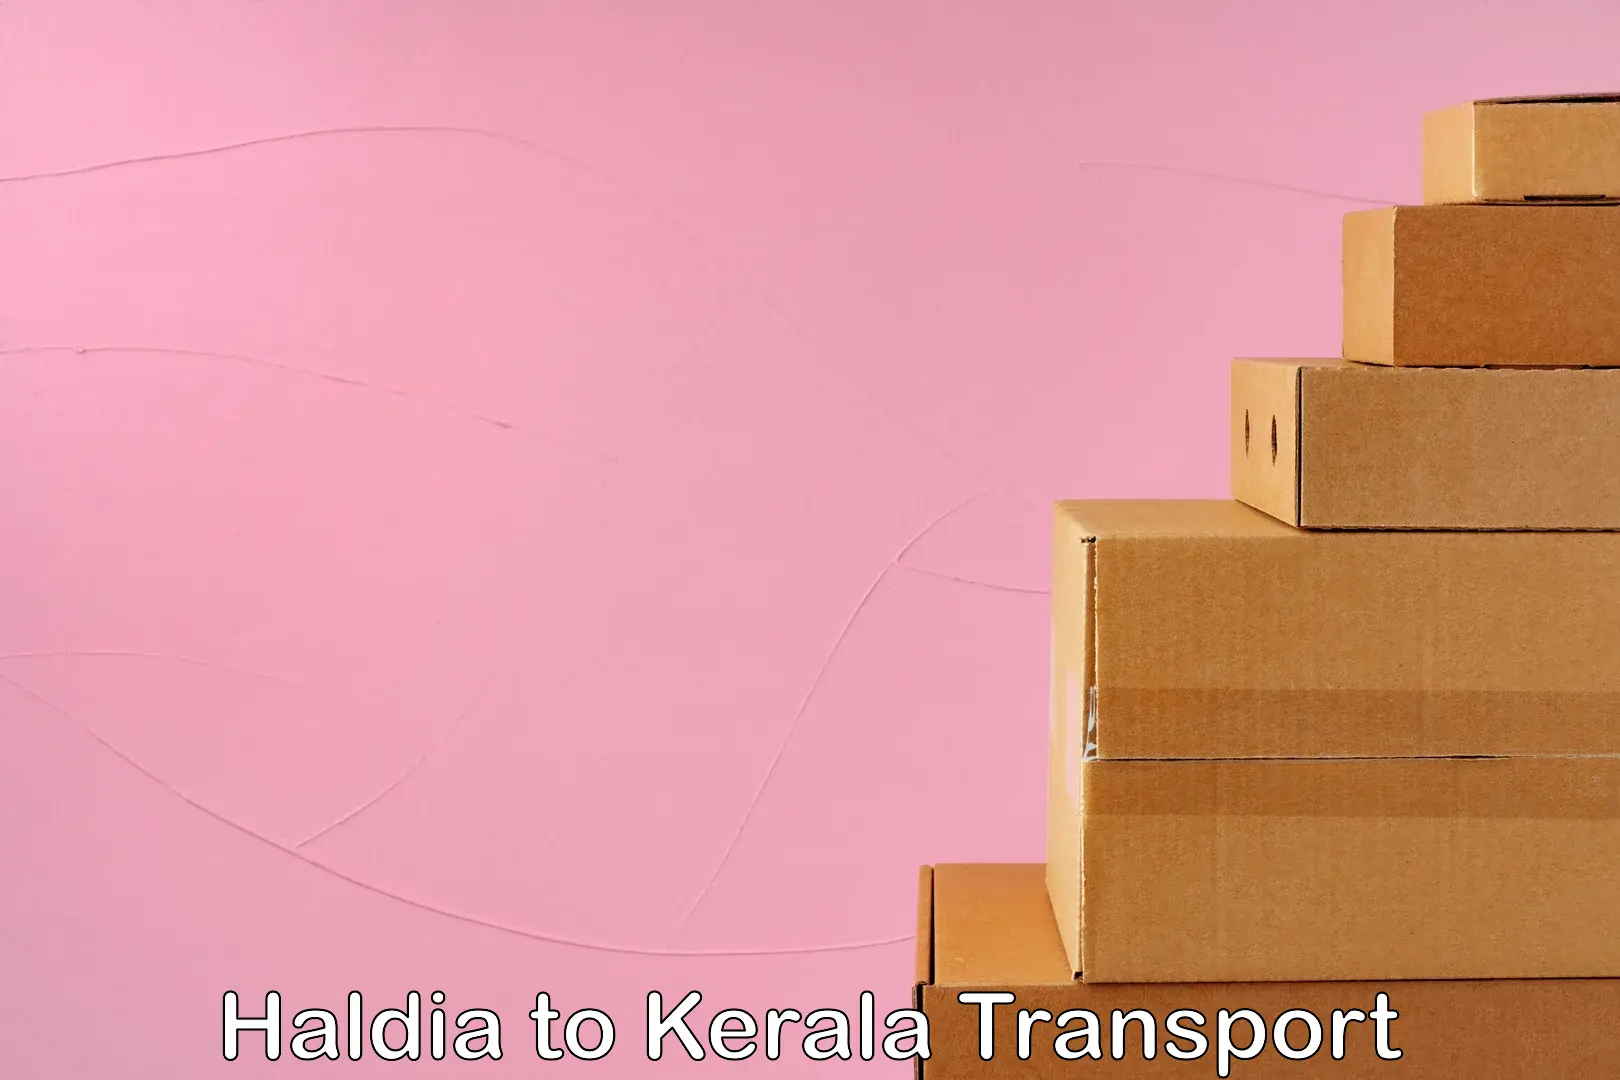 Nearest transport service Haldia to Kanjiramattom